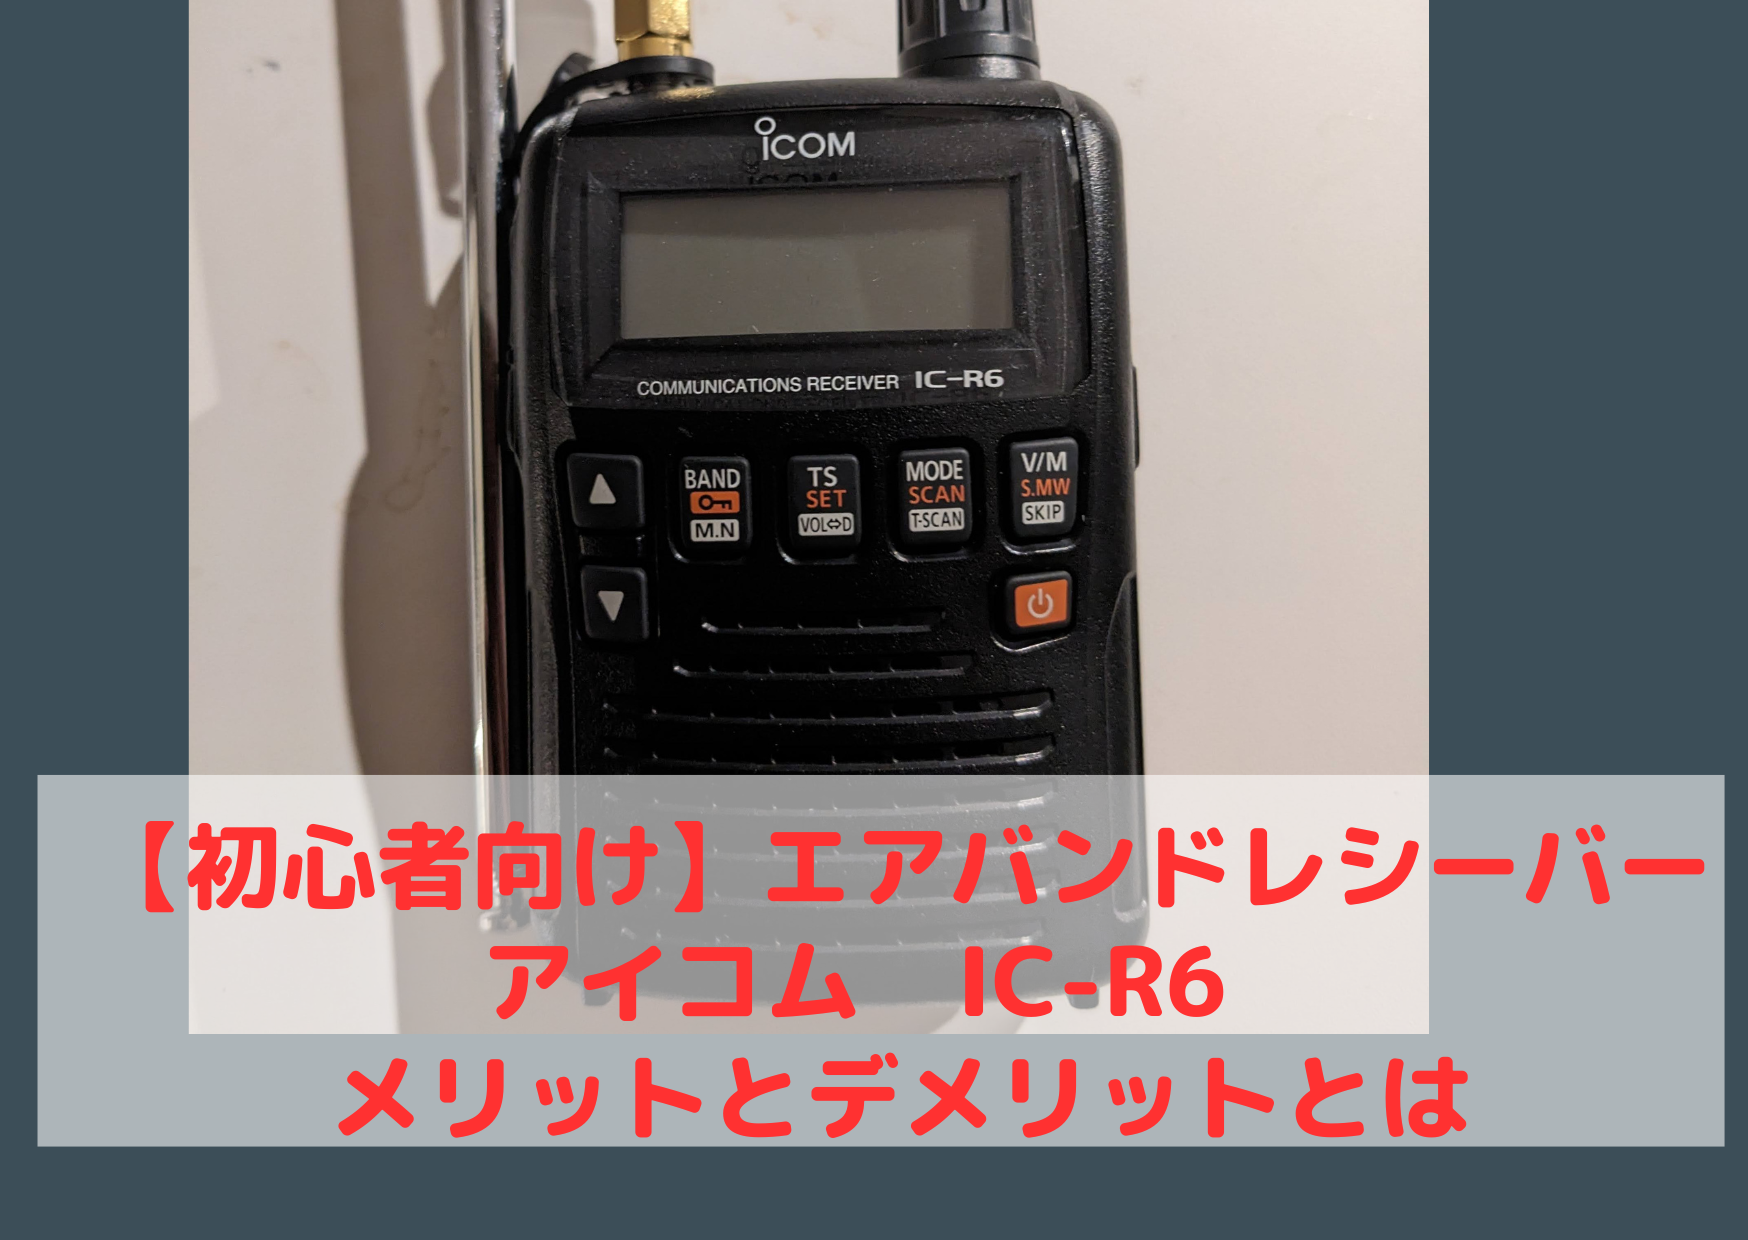 Icom IC-R6 広帯域受信機 無線 エアバンド 航空無線 ラジオコメントありがとうございます